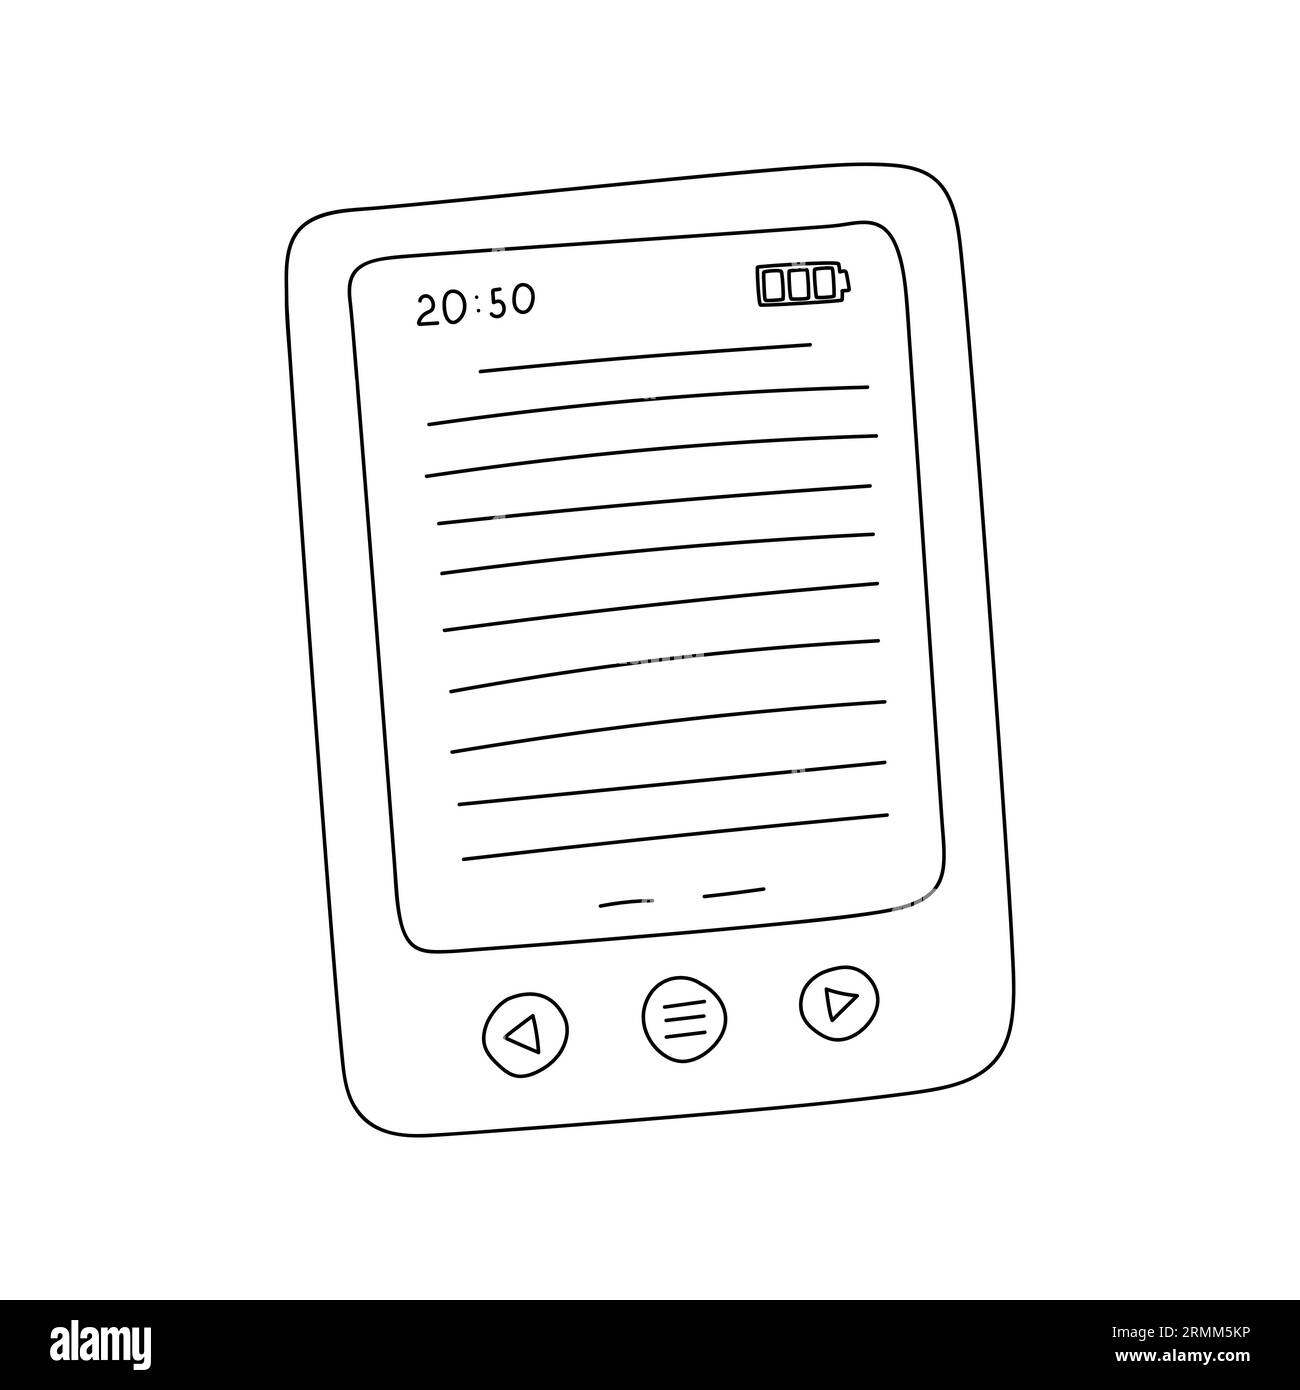 E-Book-Bildschirm mit Tasten und Ladestand. Ein handgezeichnetes Taschenbuch. Schwarz-weiß-Vektorillustration isoliert auf weißem Hintergrund. Stock Vektor